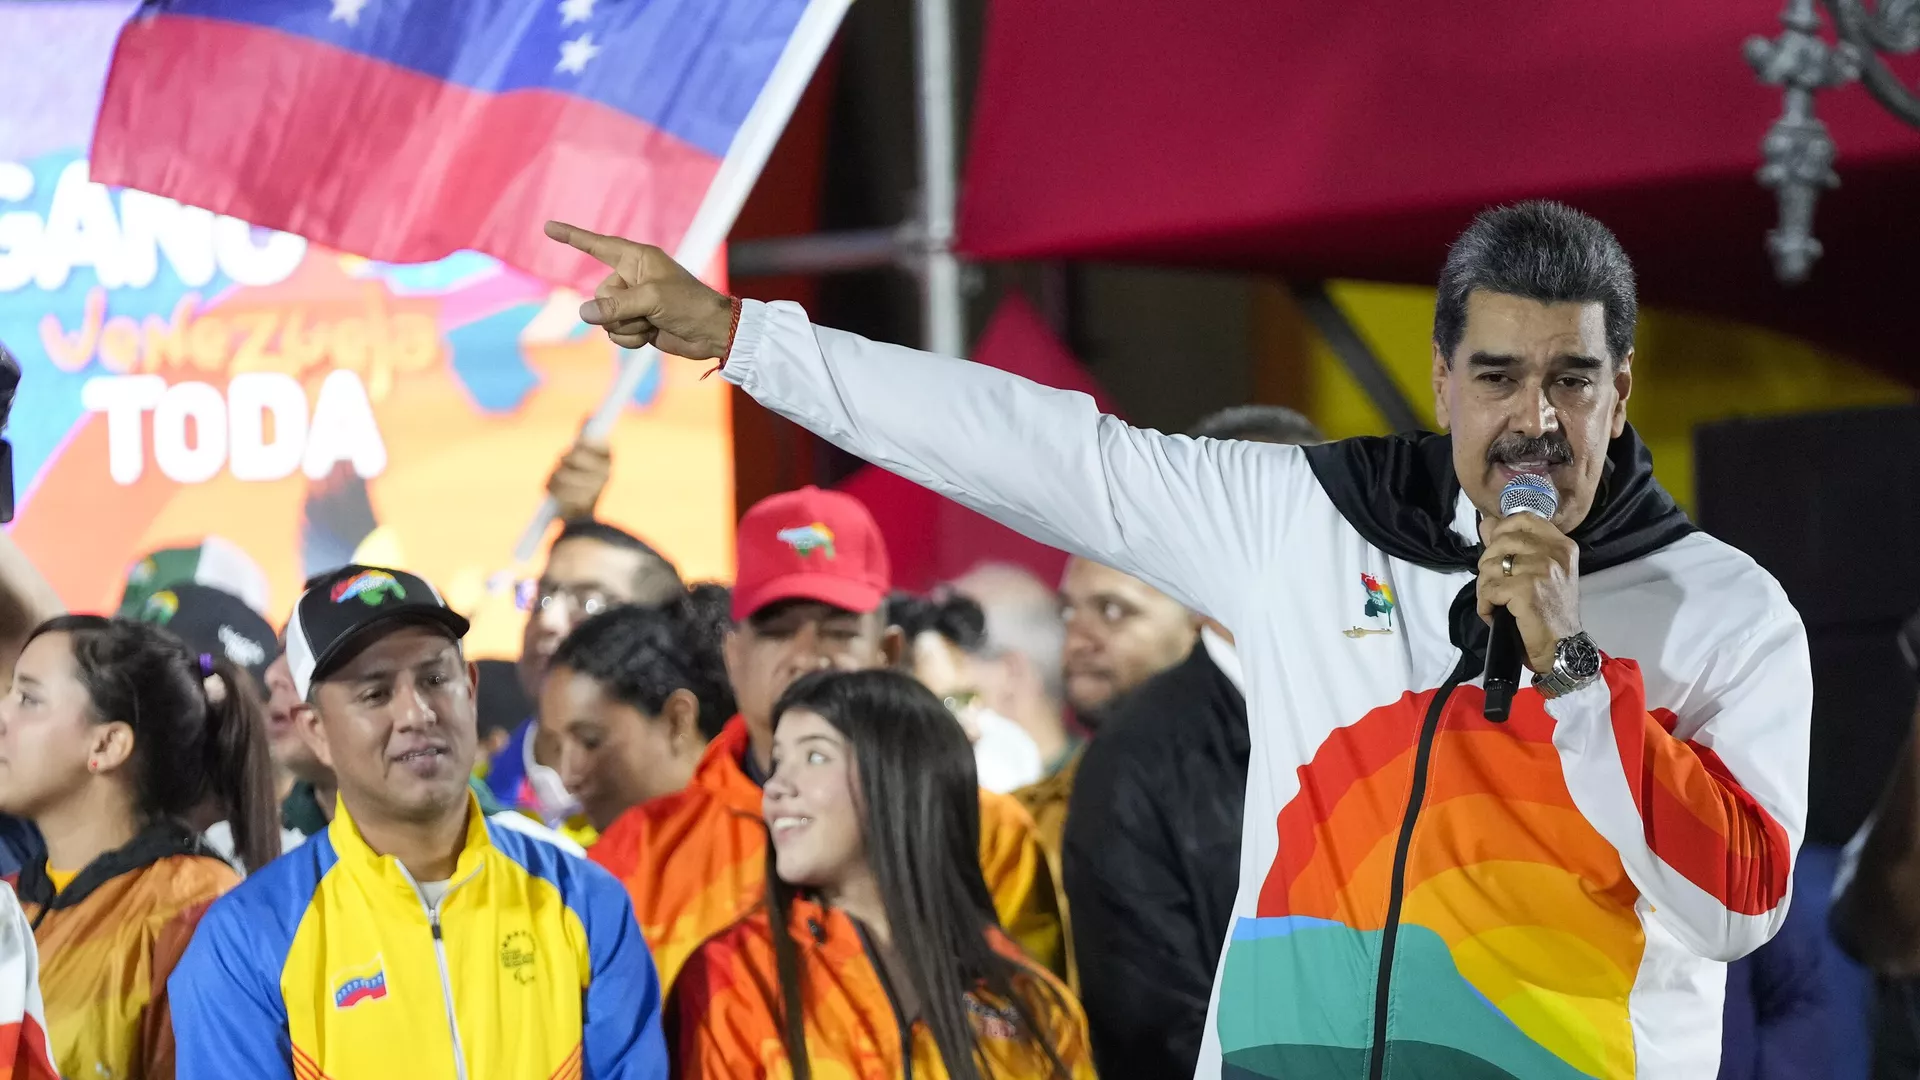 Гайана станет для Венесуэлы тем же, чем Украина для России, заявил Мадуро